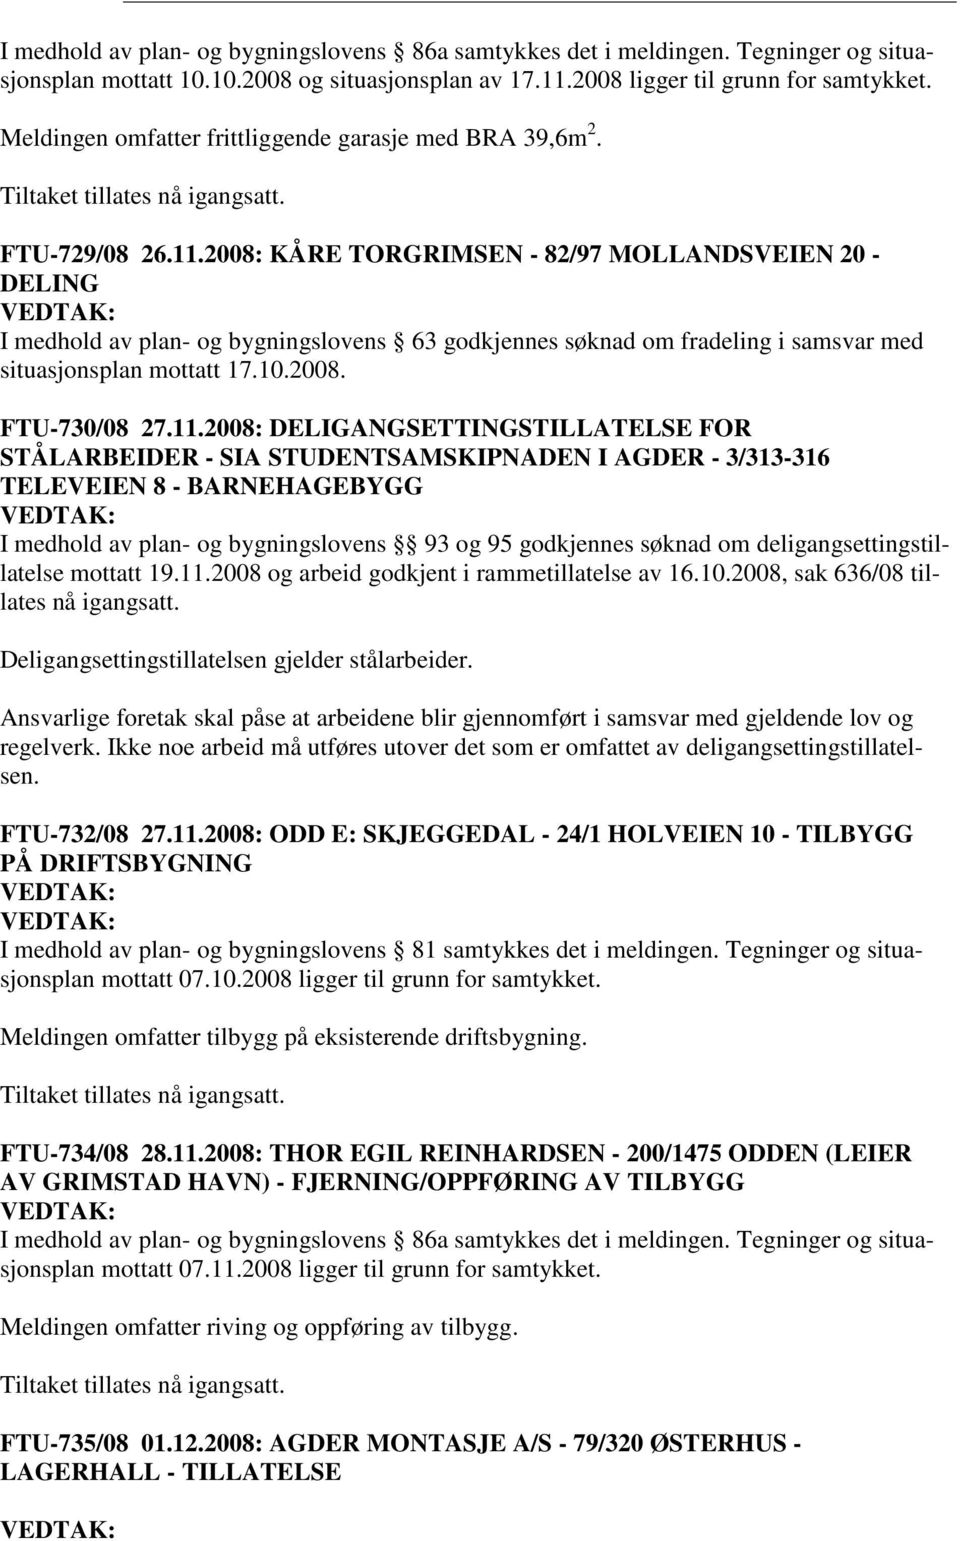 2008: KÅRE TORGRIMSEN - 82/97 MOLLANDSVEIEN 20 - DELING I medhold av plan- og bygningslovens 63 godkjennes søknad om fradeling i samsvar med situasjonsplan mottatt 17.10.2008. FTU-730/08 27.11.